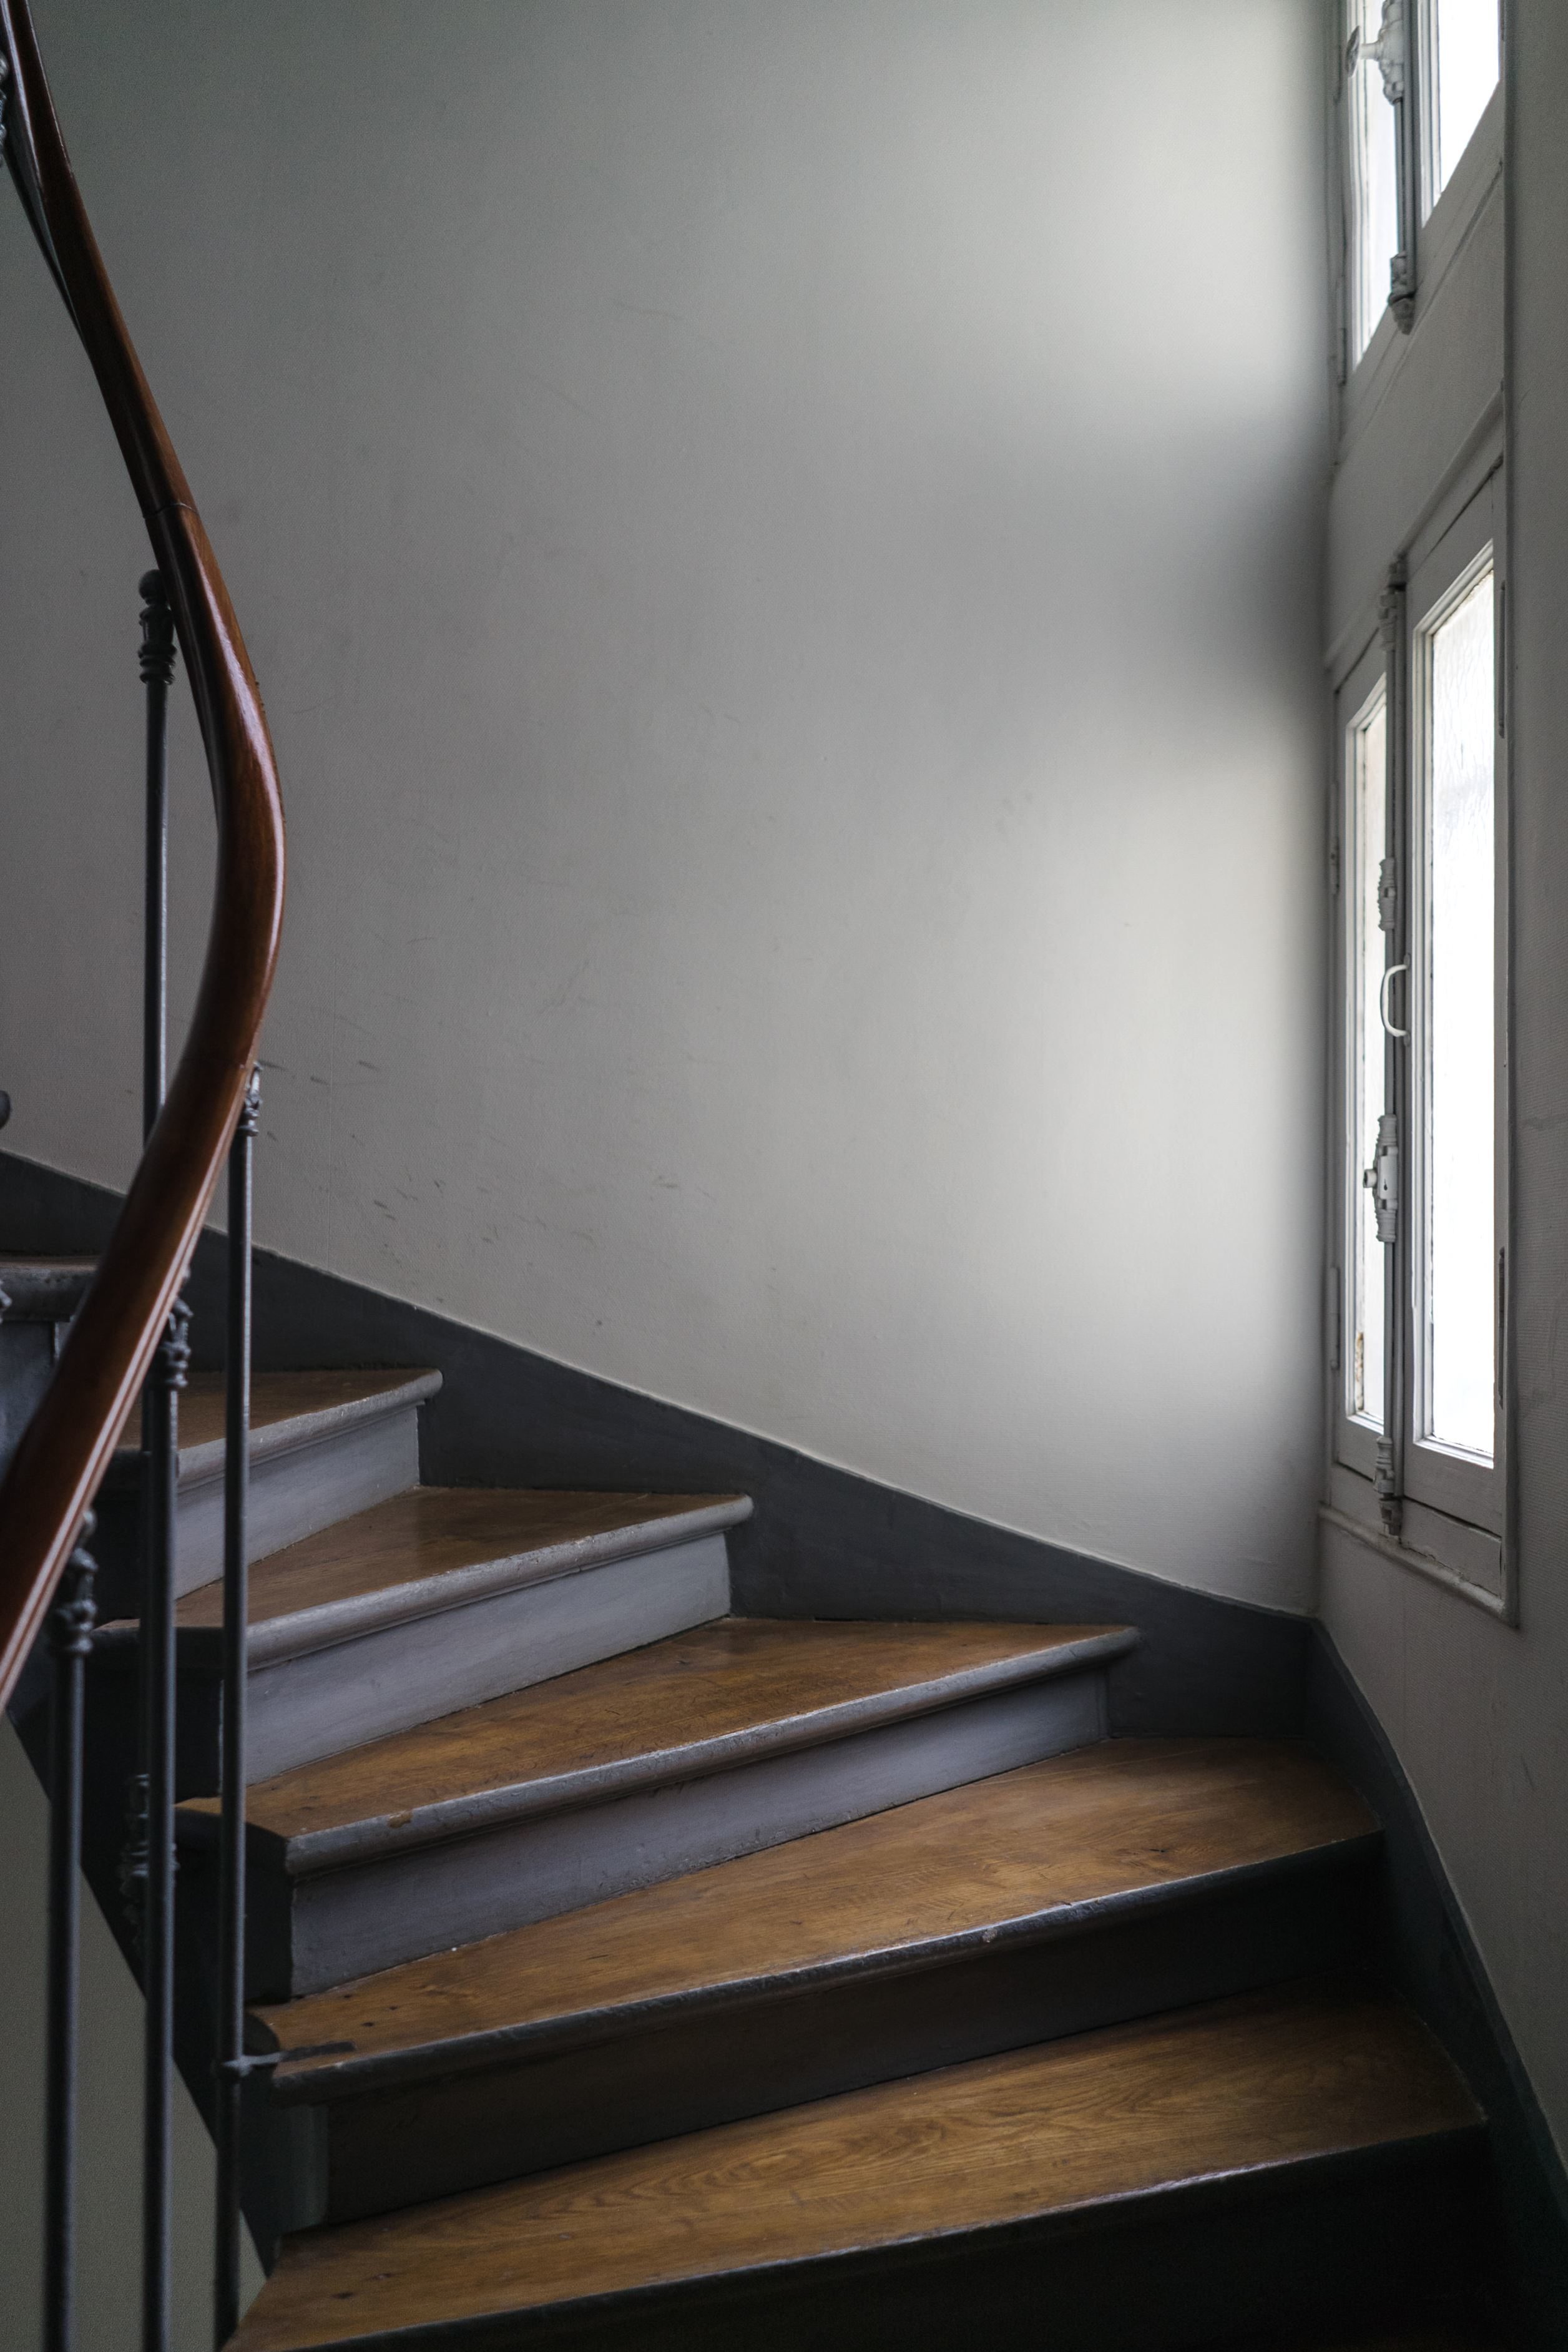 Image libre: en bois, garde-corps, escalier, escaliers